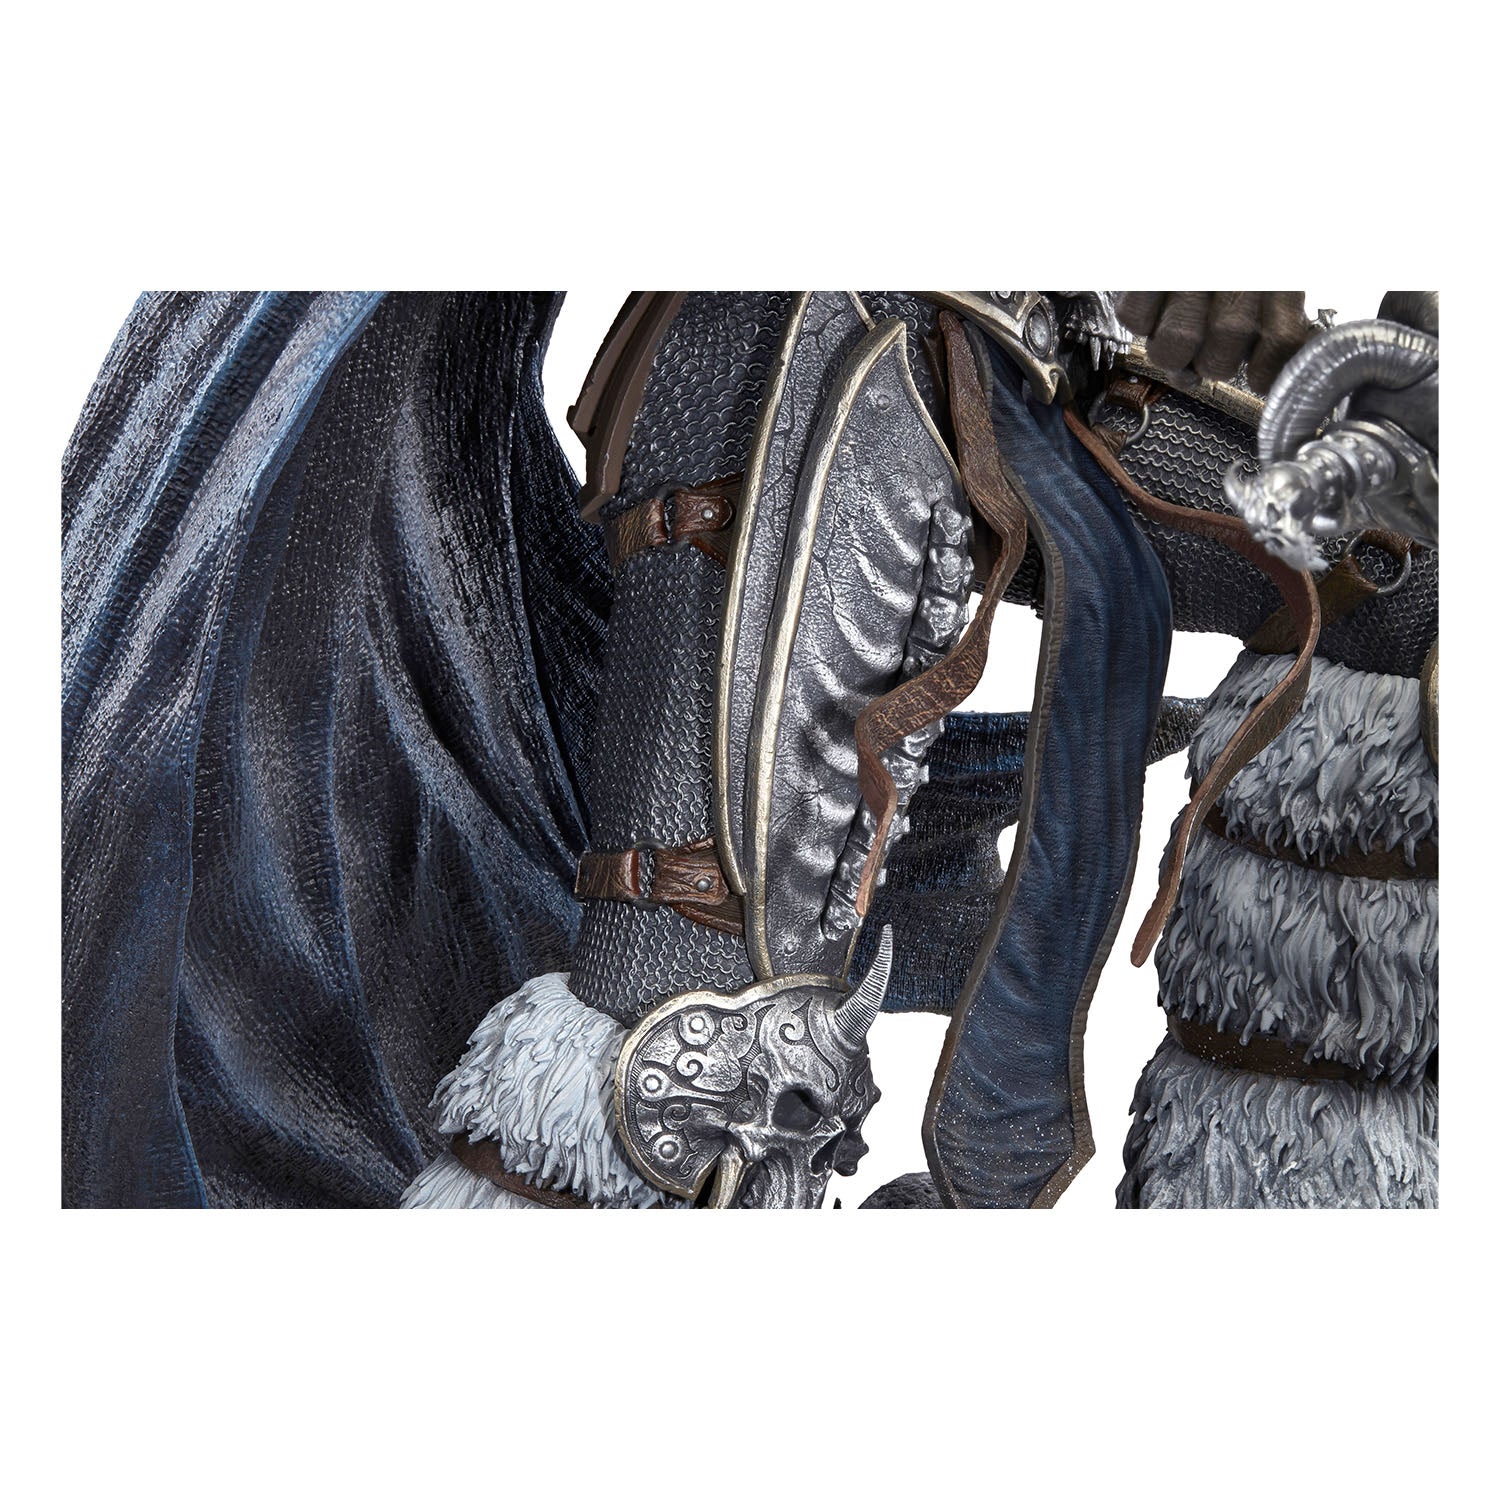 World of Warcraft Lich King Arthas 66cm Premium Statue - Zoom Leg View